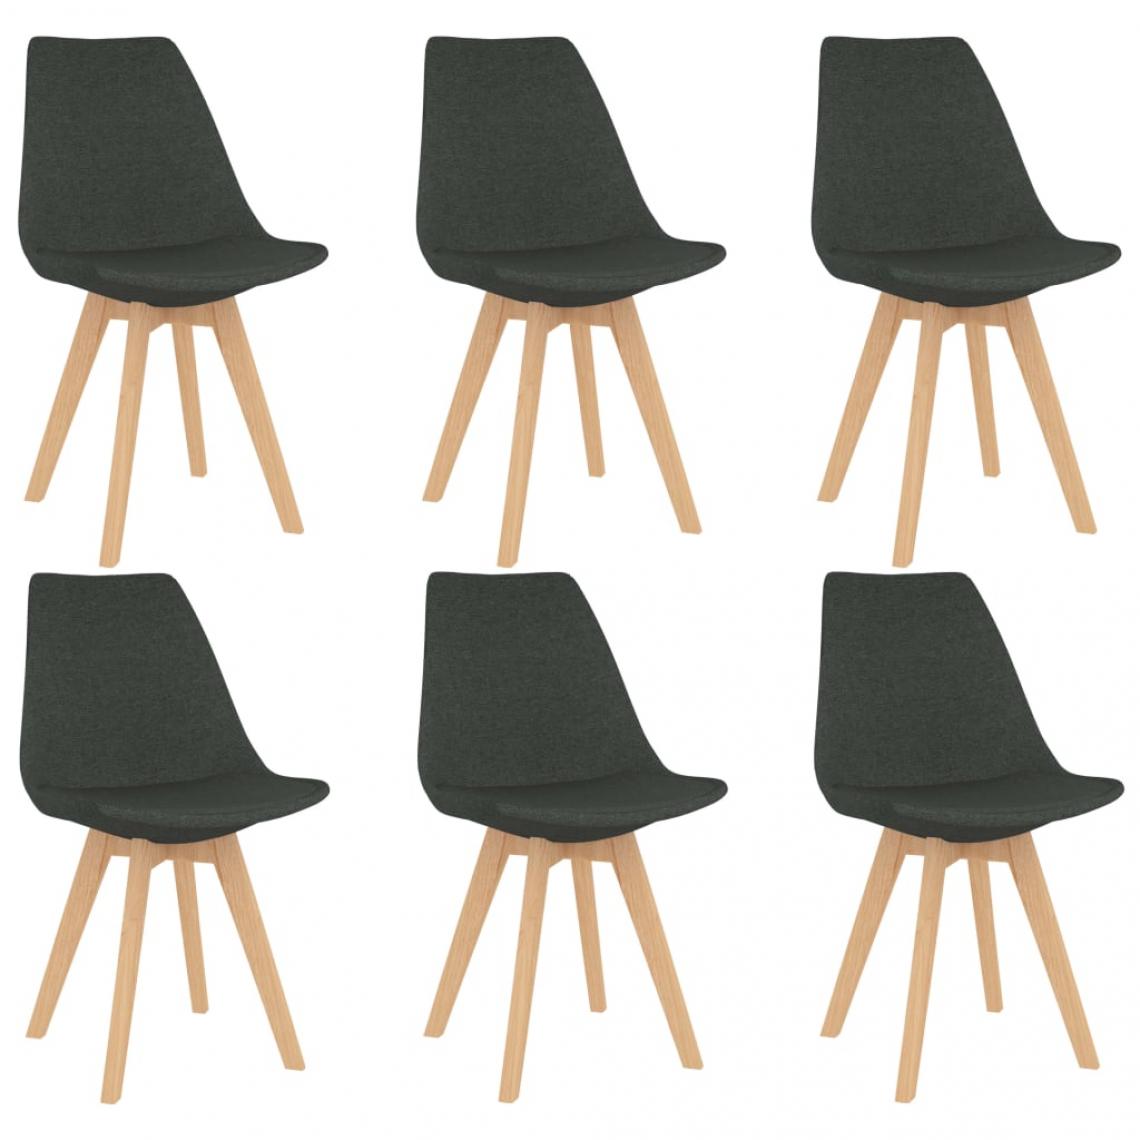 Decoshop26 - Lot de 6 chaises de salle à manger cuisine design scandinave tissu gris foncé CDS022452 - Chaises